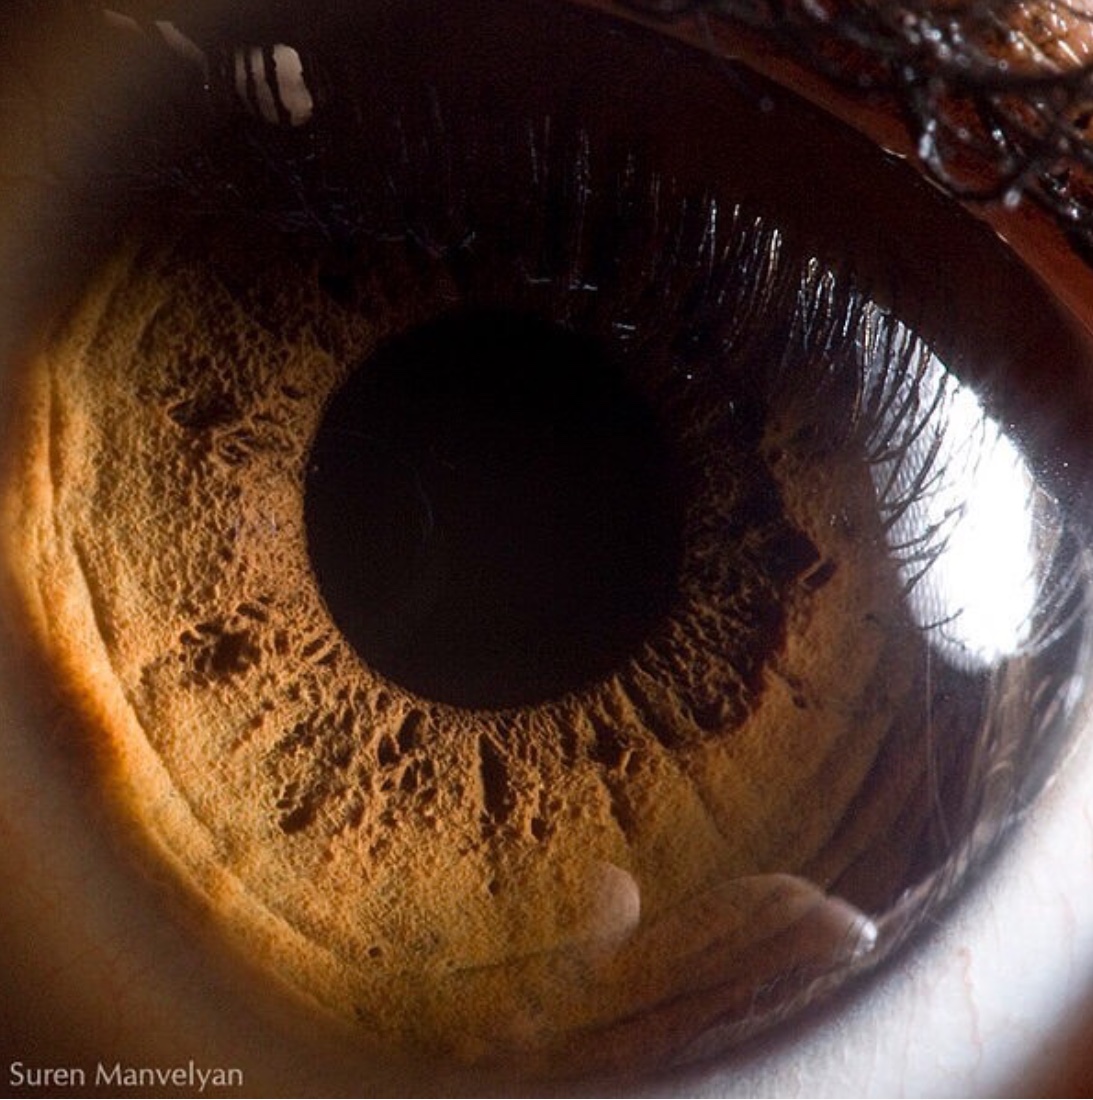 人类的眼睛（有多奇妙？又有多可怕？） - 哔哩哔哩